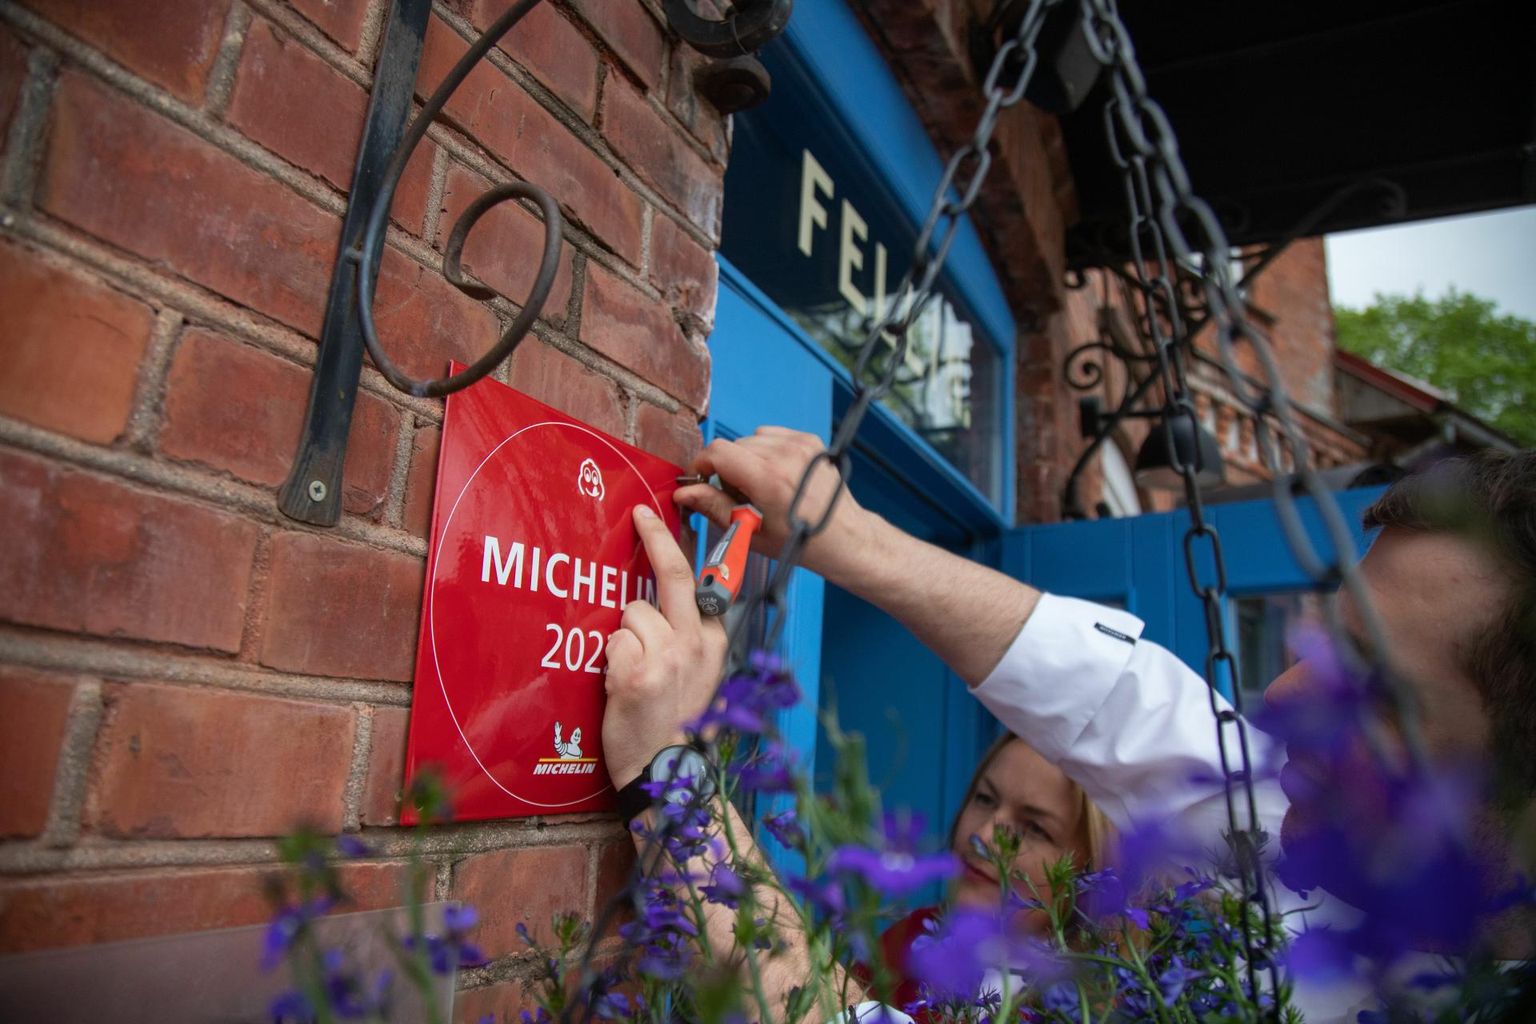 Eelmisel kevadel Fellini sinise ukse kõrvale kruvitud Michelini Bib Gourmand tunnustus saab tänavu lisa, sest kohvik hoidis sama suurepärast joont ning märgiti ära ka 2023. aasta restoranigiidis. 